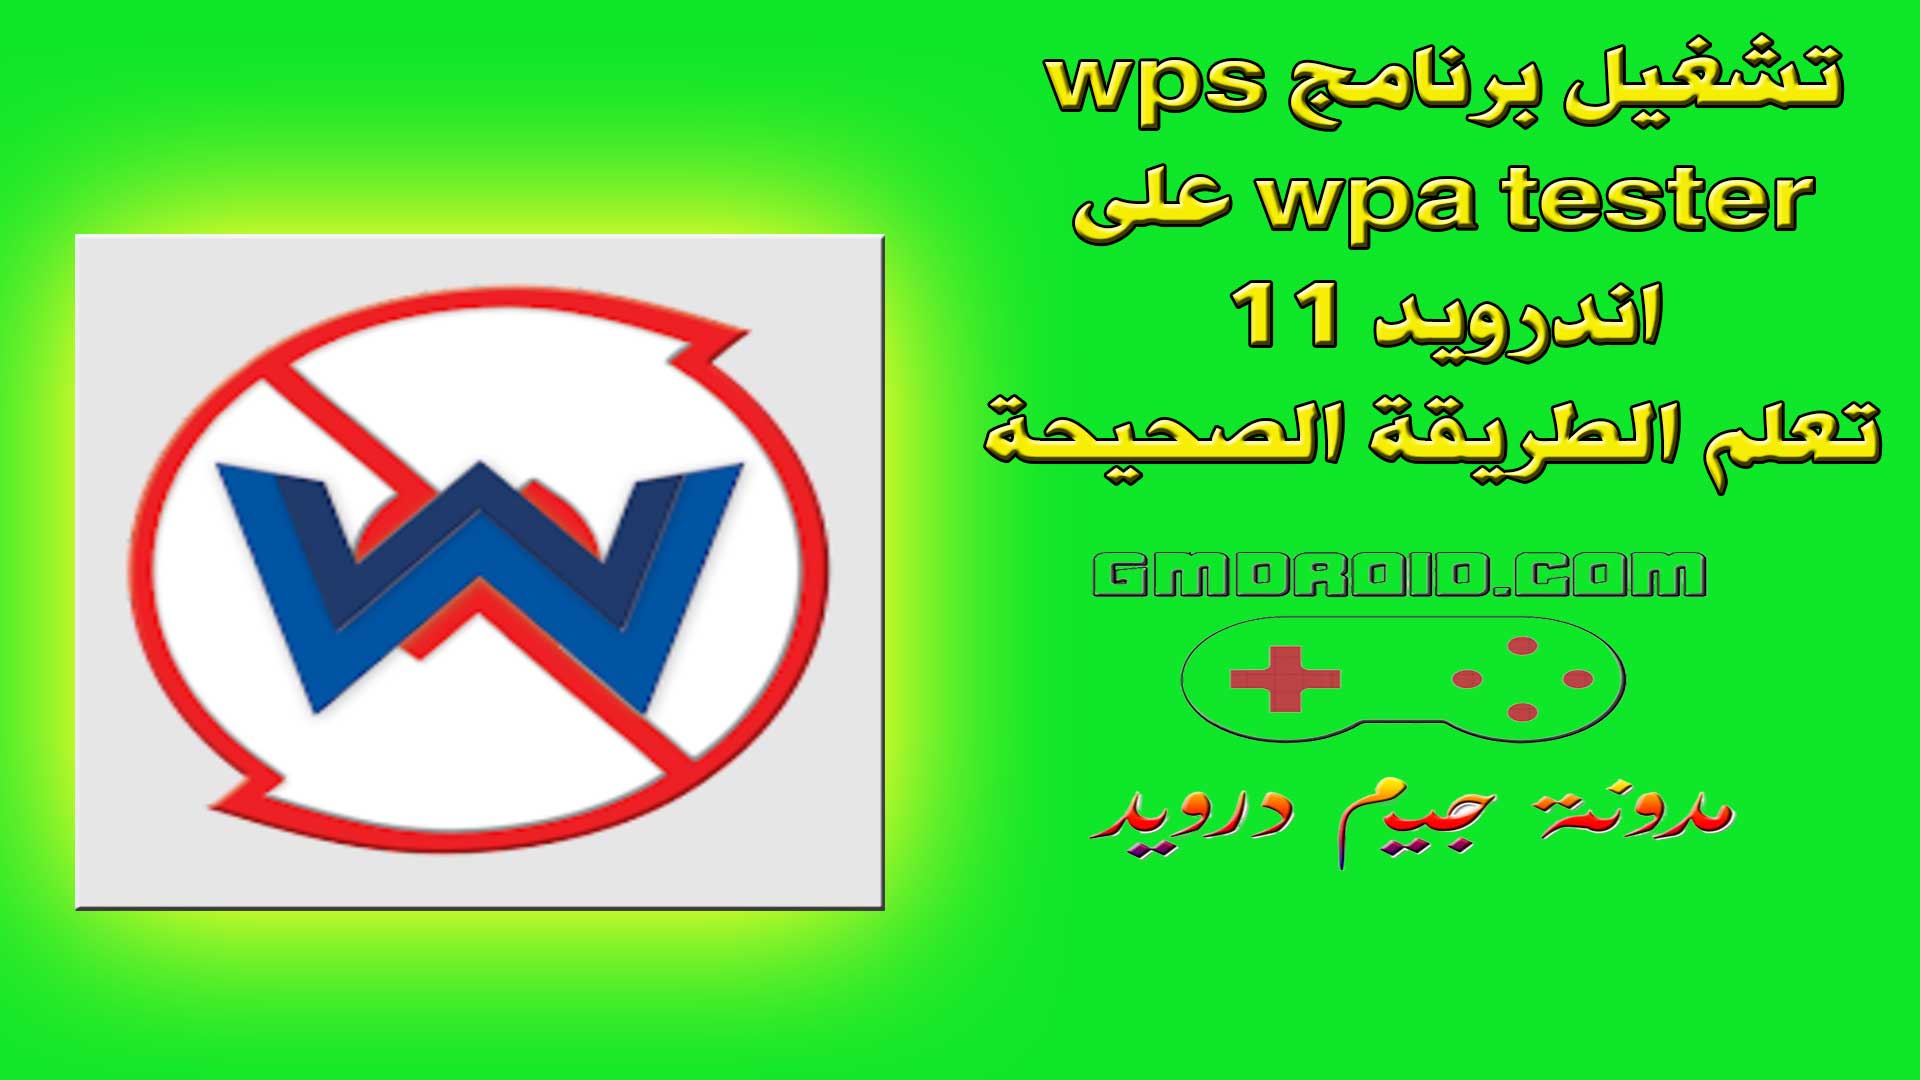 تشغيل برنامج wps wpa tester على اندرويد 11 - تعلم الطريقة الصحيحة